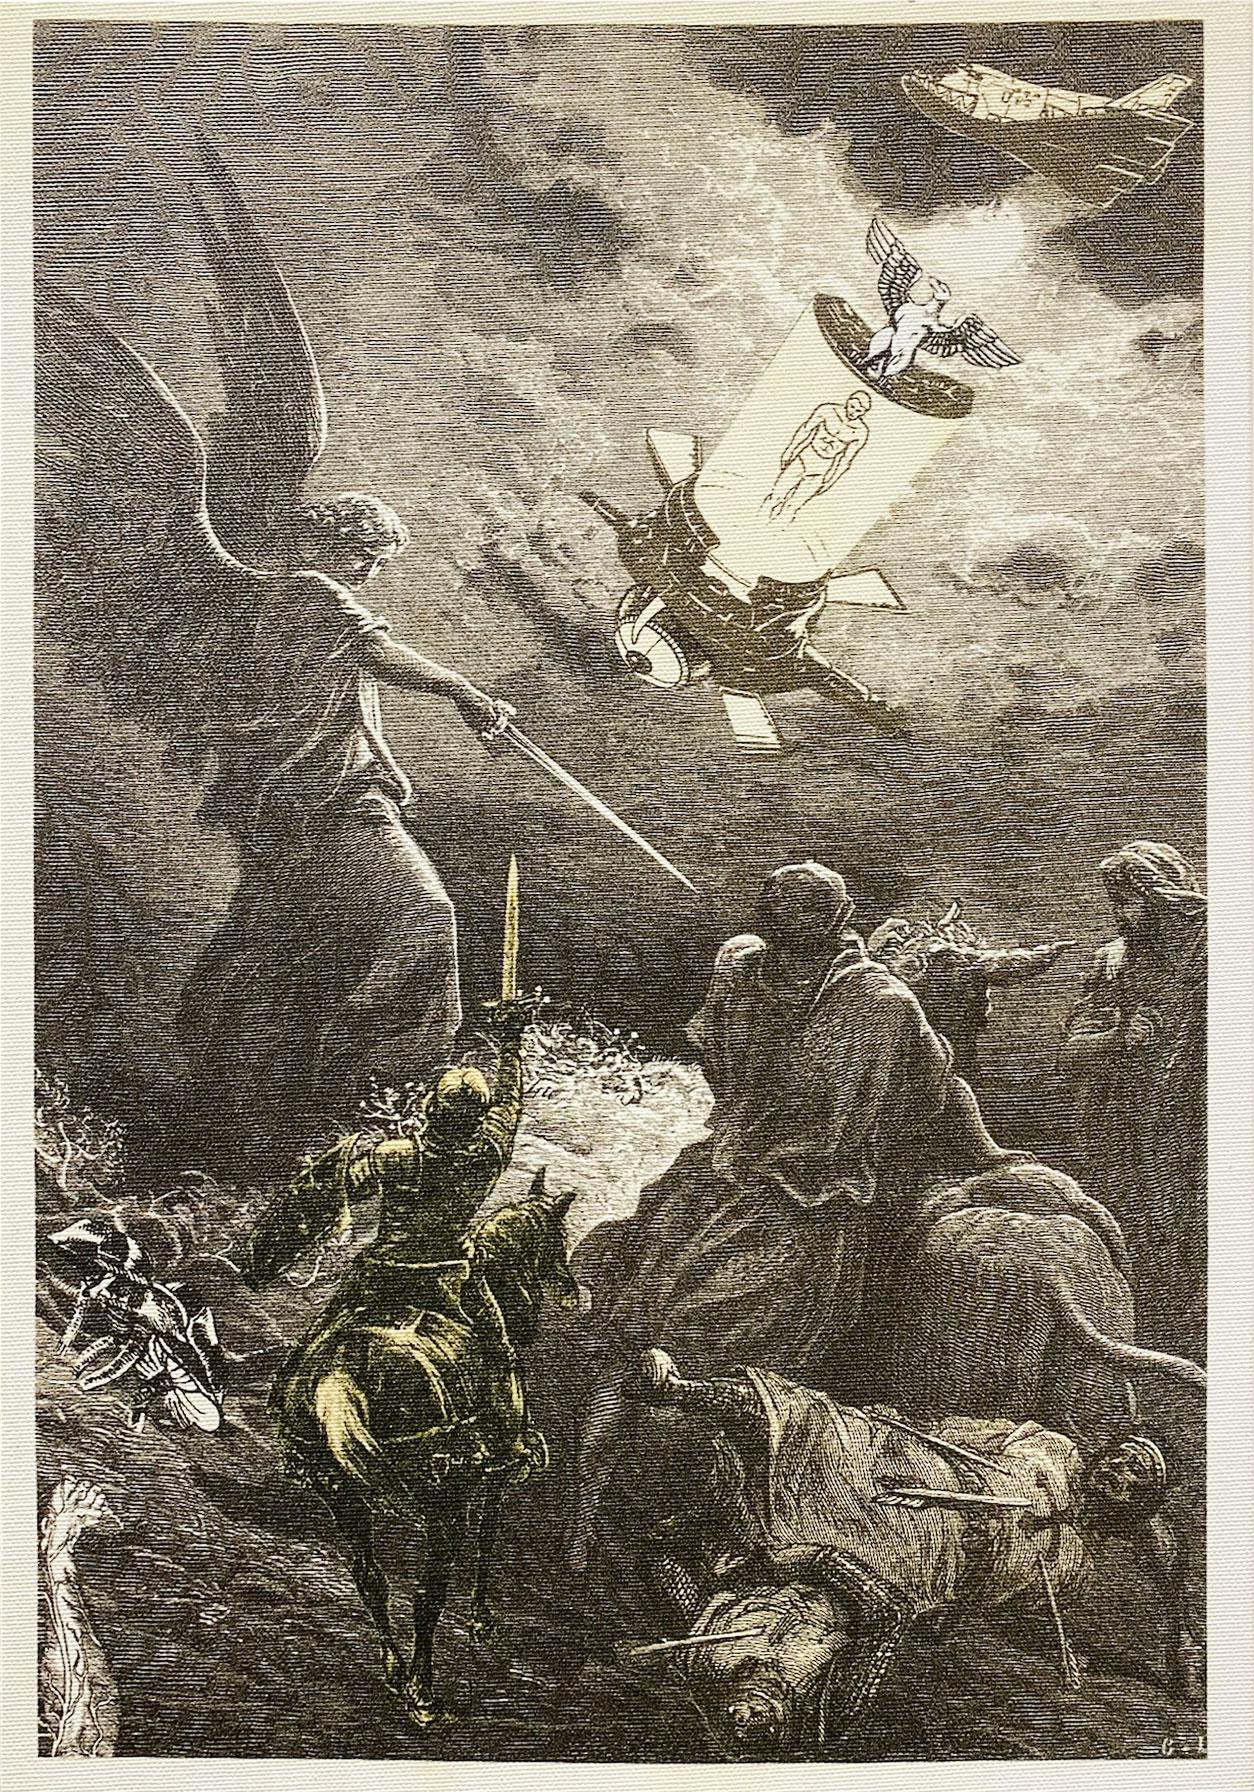 World War 3 Circus of Resistance (5) - Print by Rafet Arslan